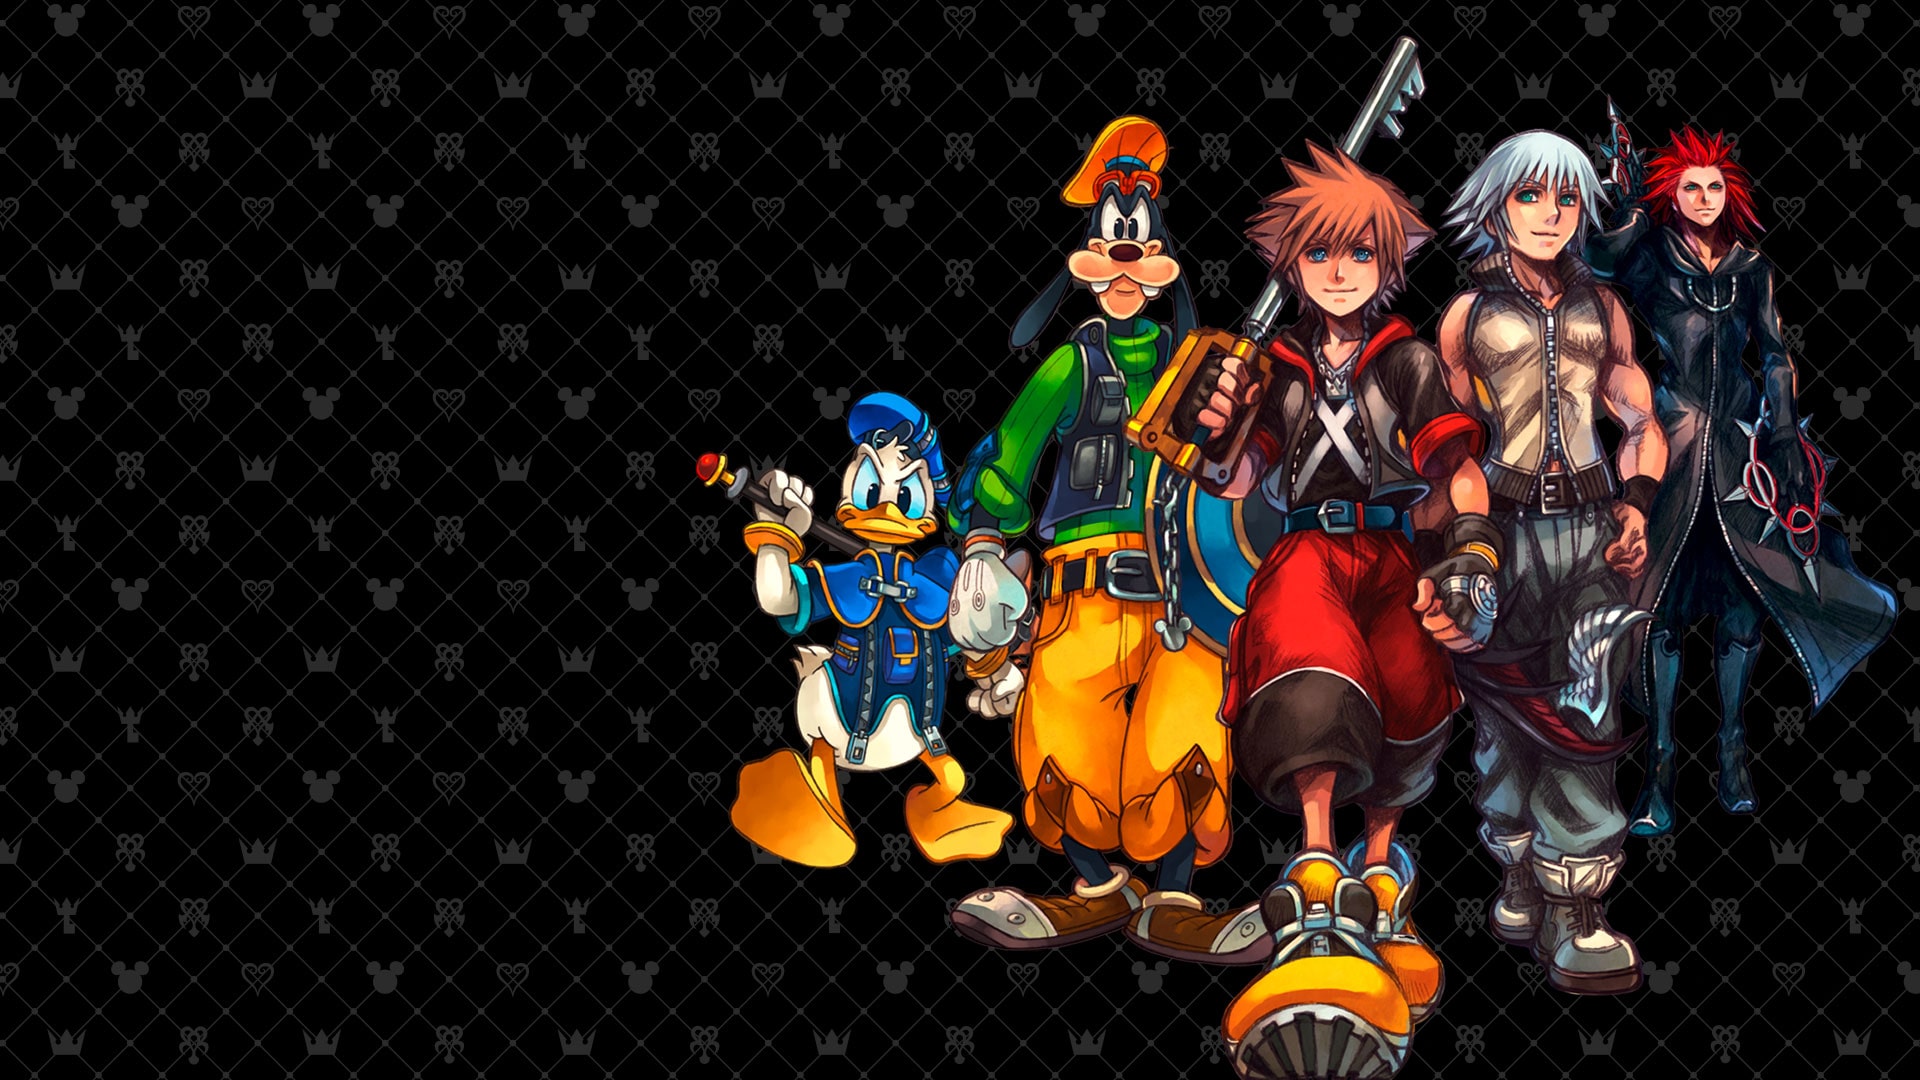 14256円 【予約受付中】 Kingdom Hearts HD 2.8 Final Chapter Prologue Limited Edition PlayStation 4 キングダムハーツファイナルチャプタープロローグ限定版 並行輸